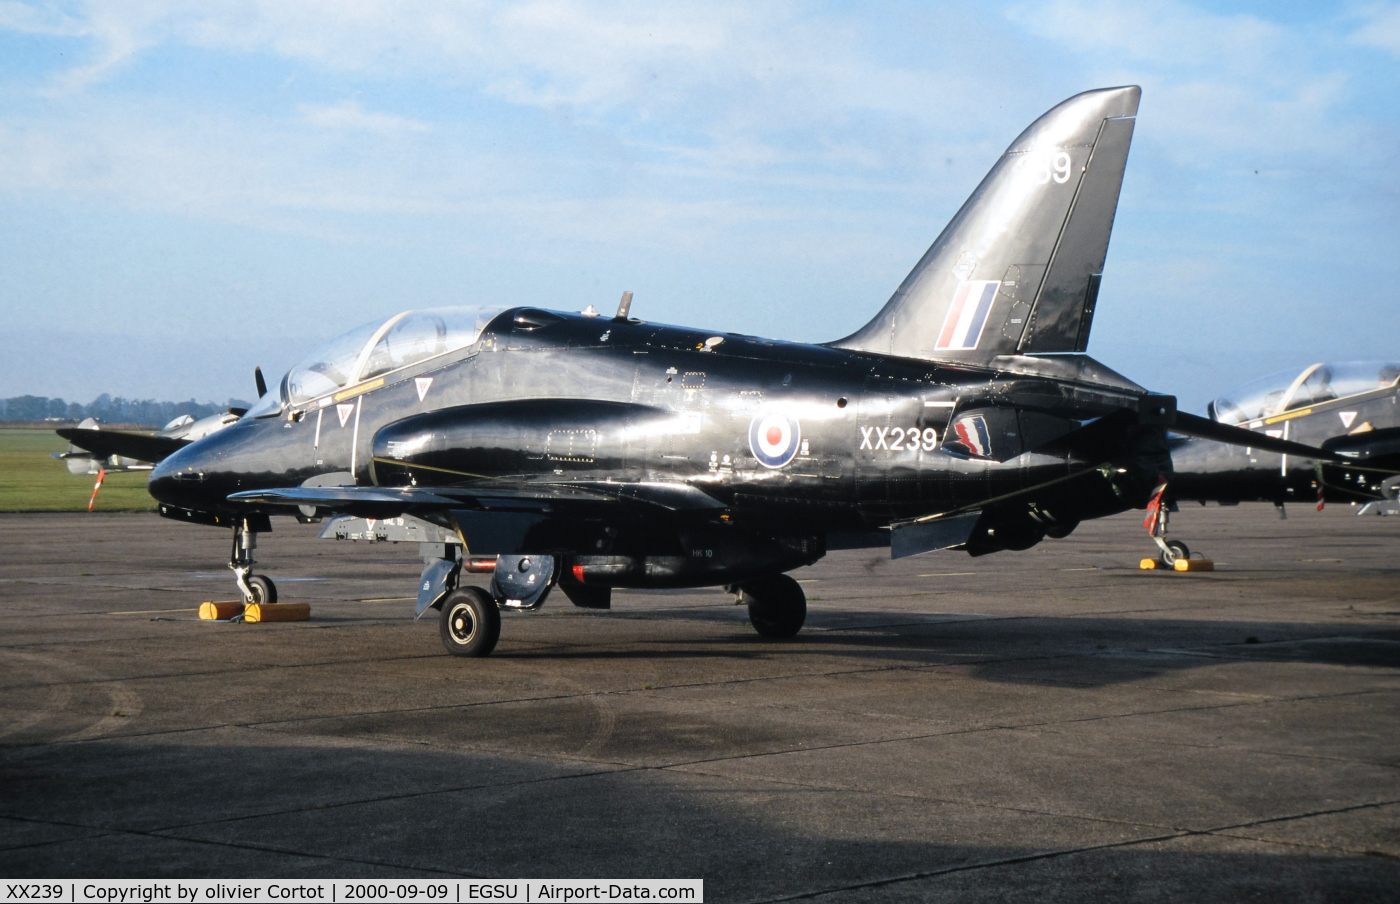 XX239, 1978 Hawker Siddeley Hawk T.1W C/N 075/312075, Duxford airshow 2000